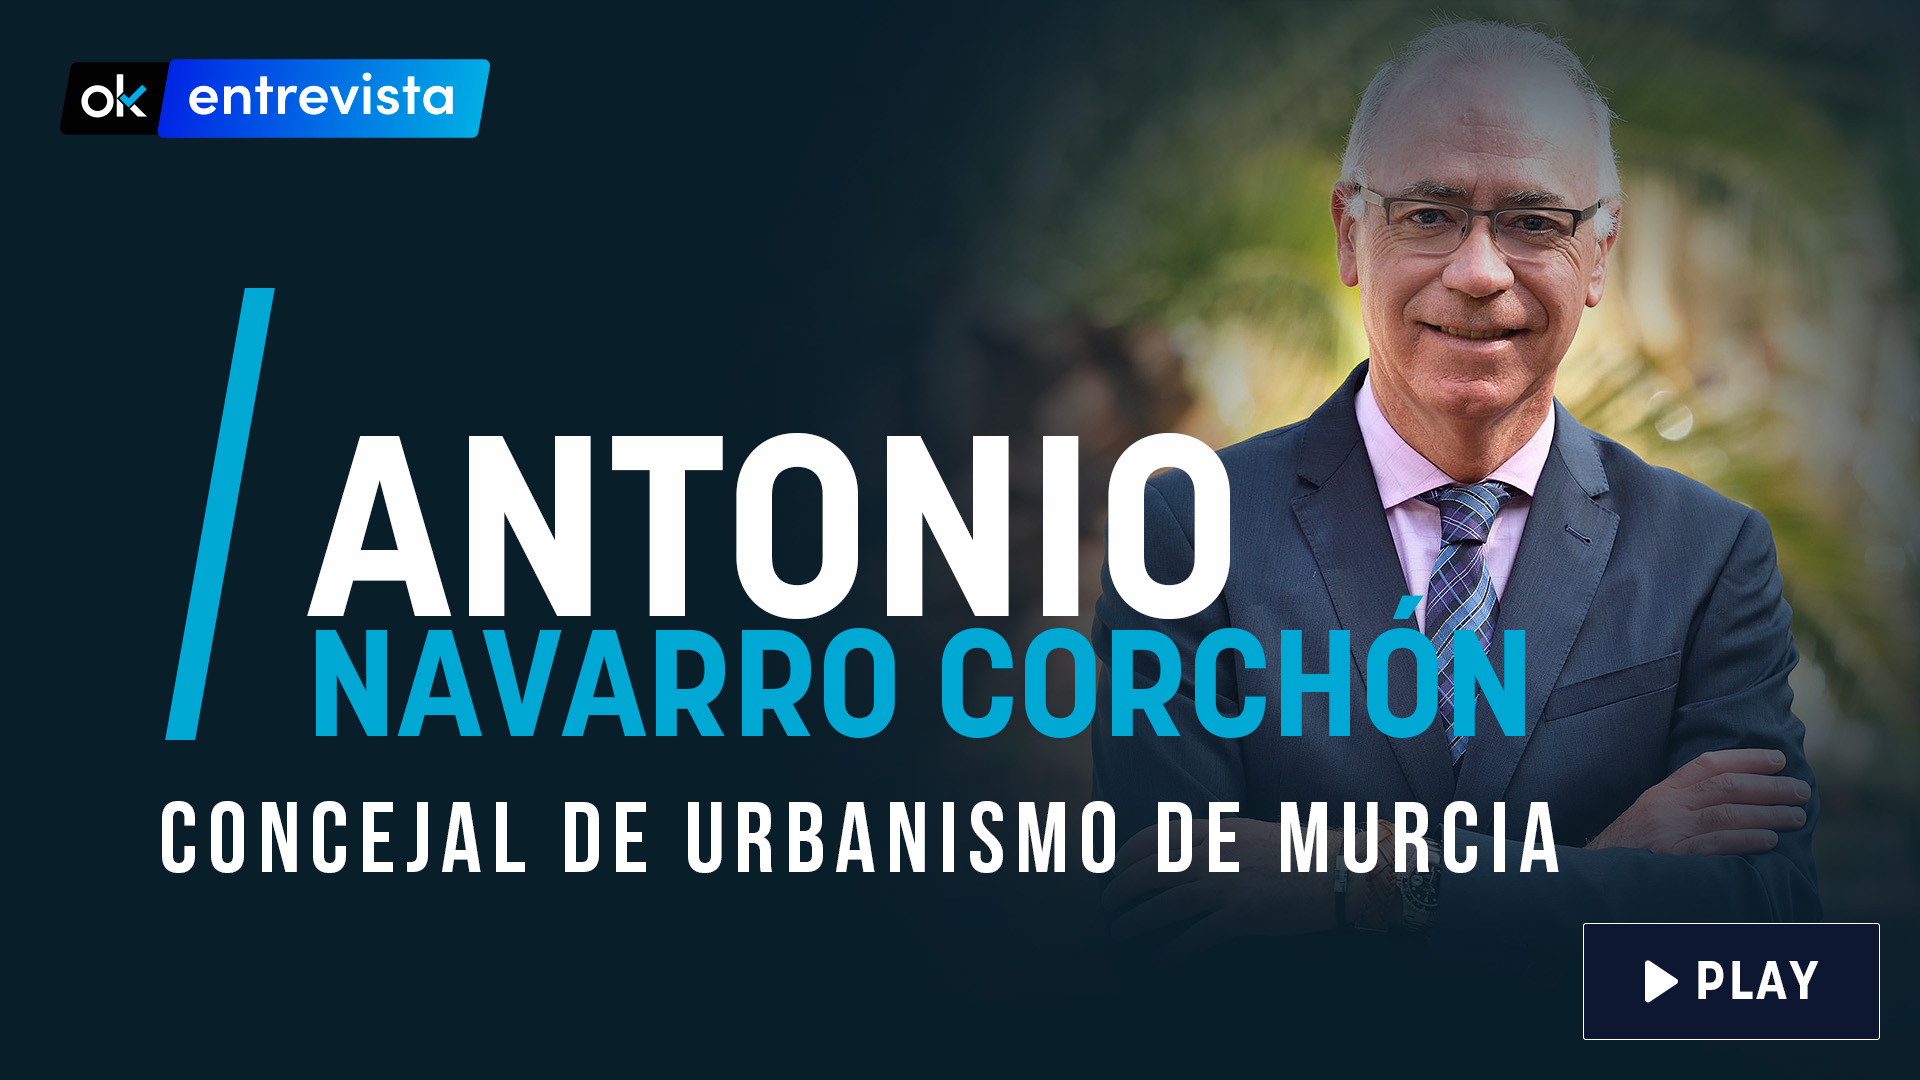 Concejal de Urbanismo del Ayuntamiento de Murcia